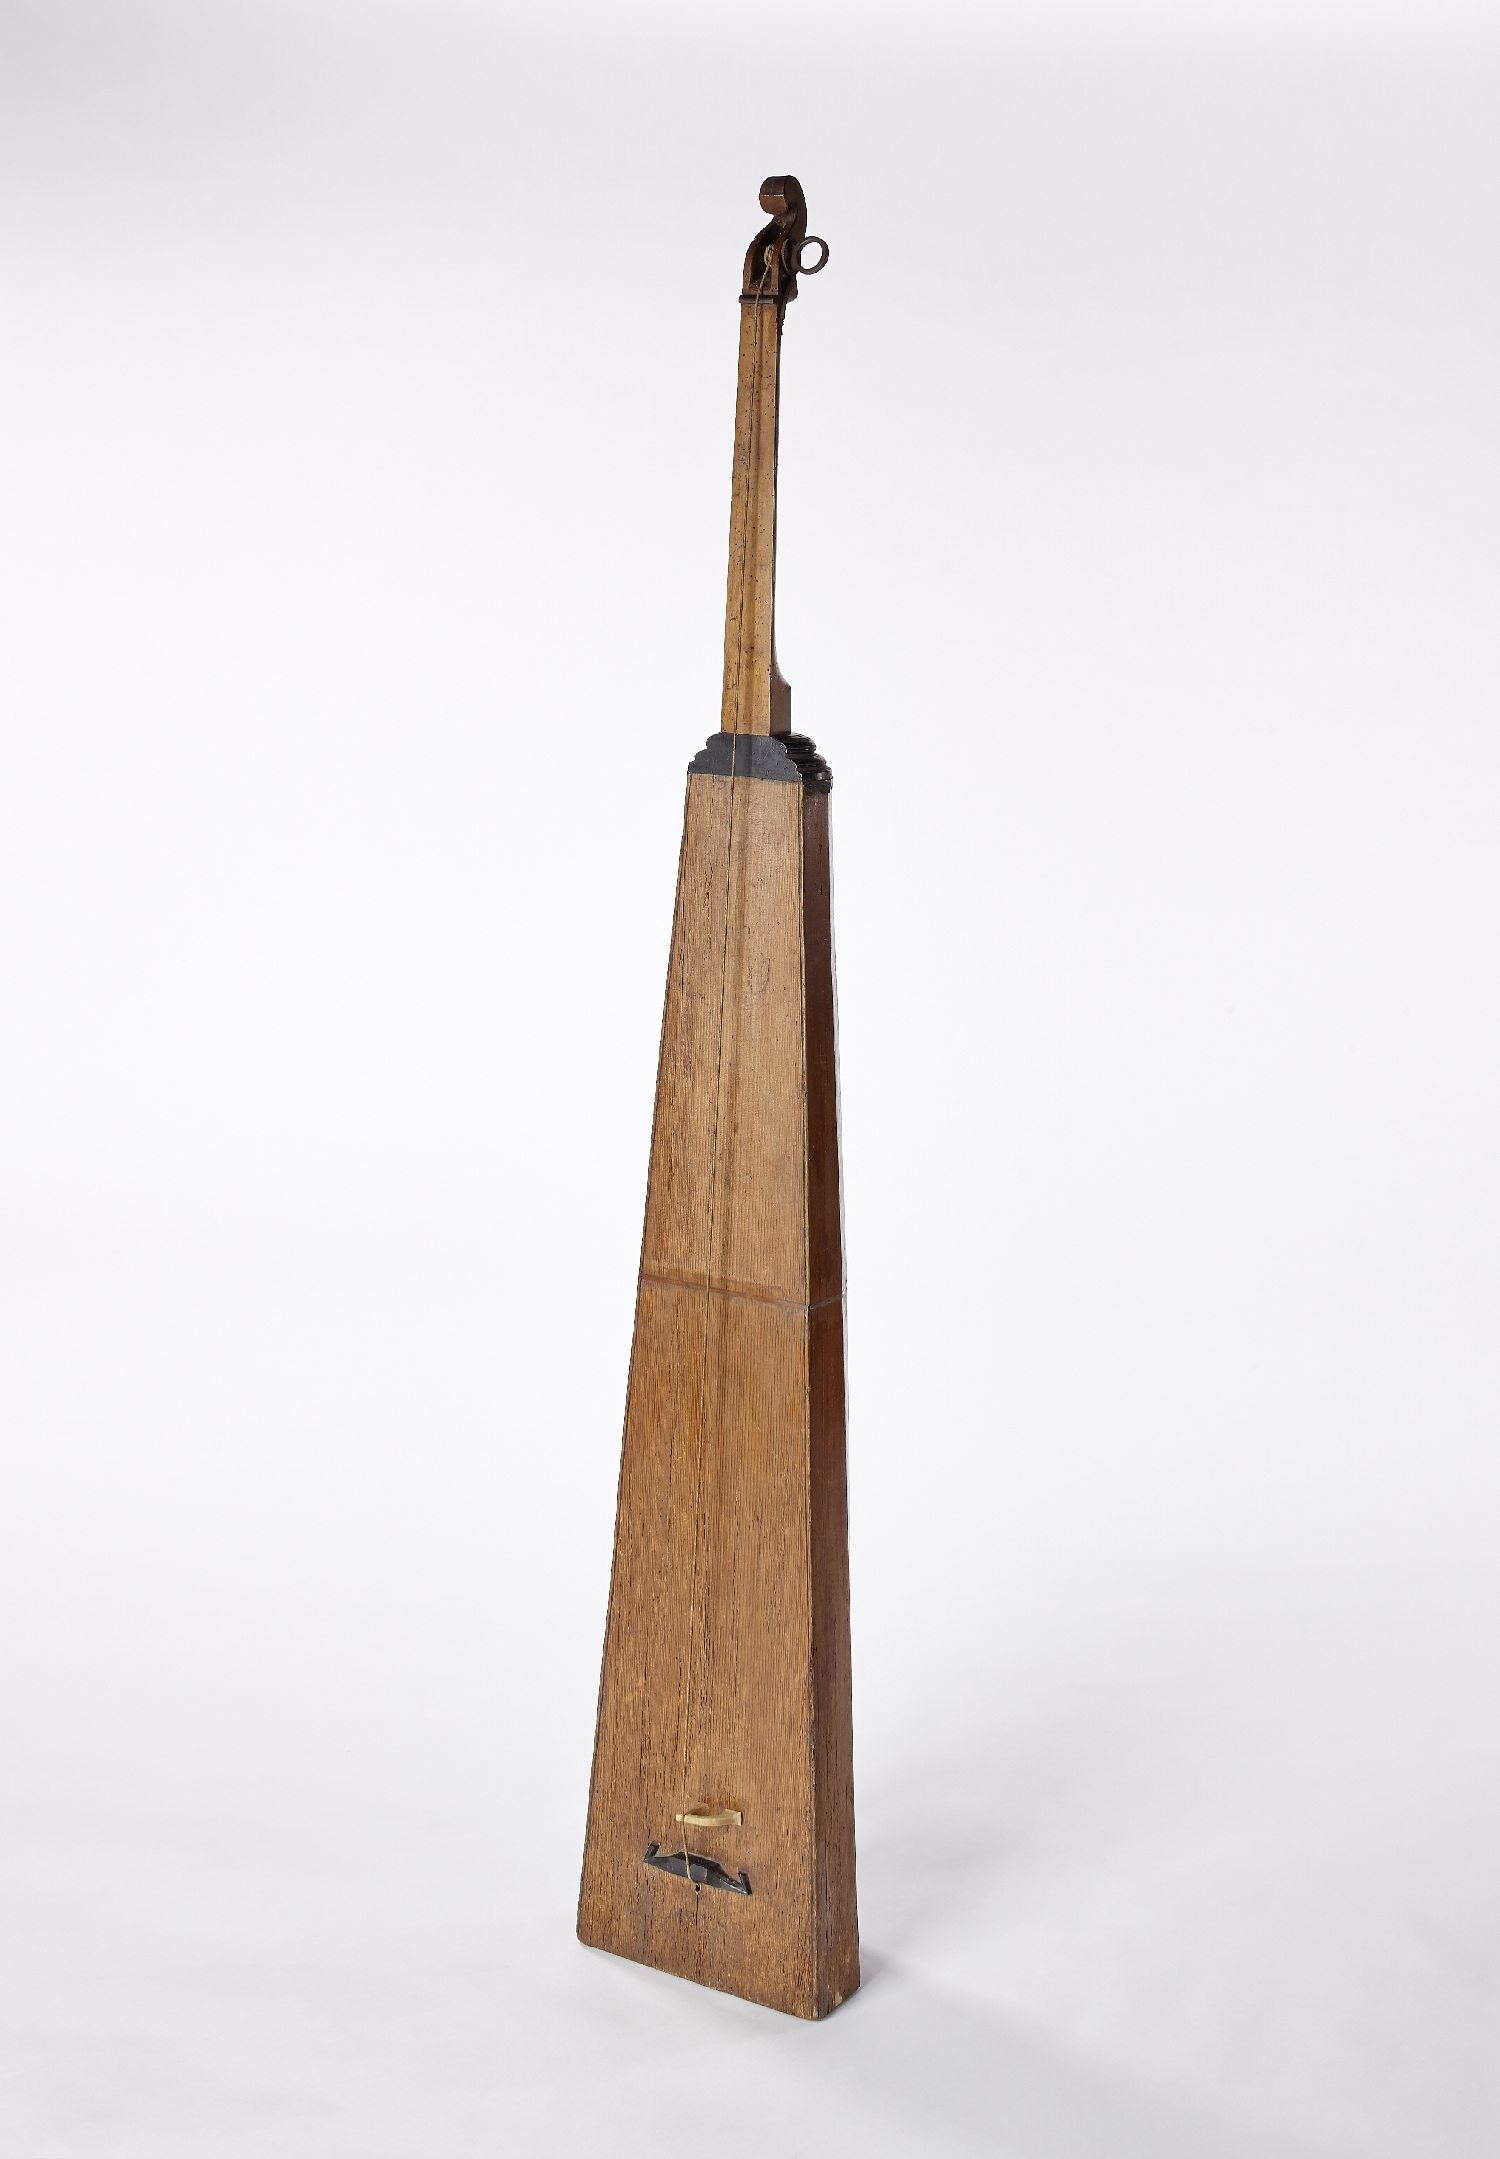 Tromba marina, unknown instrument maker, Austria, 18th c., wood (fir), inv. no. MI 1427